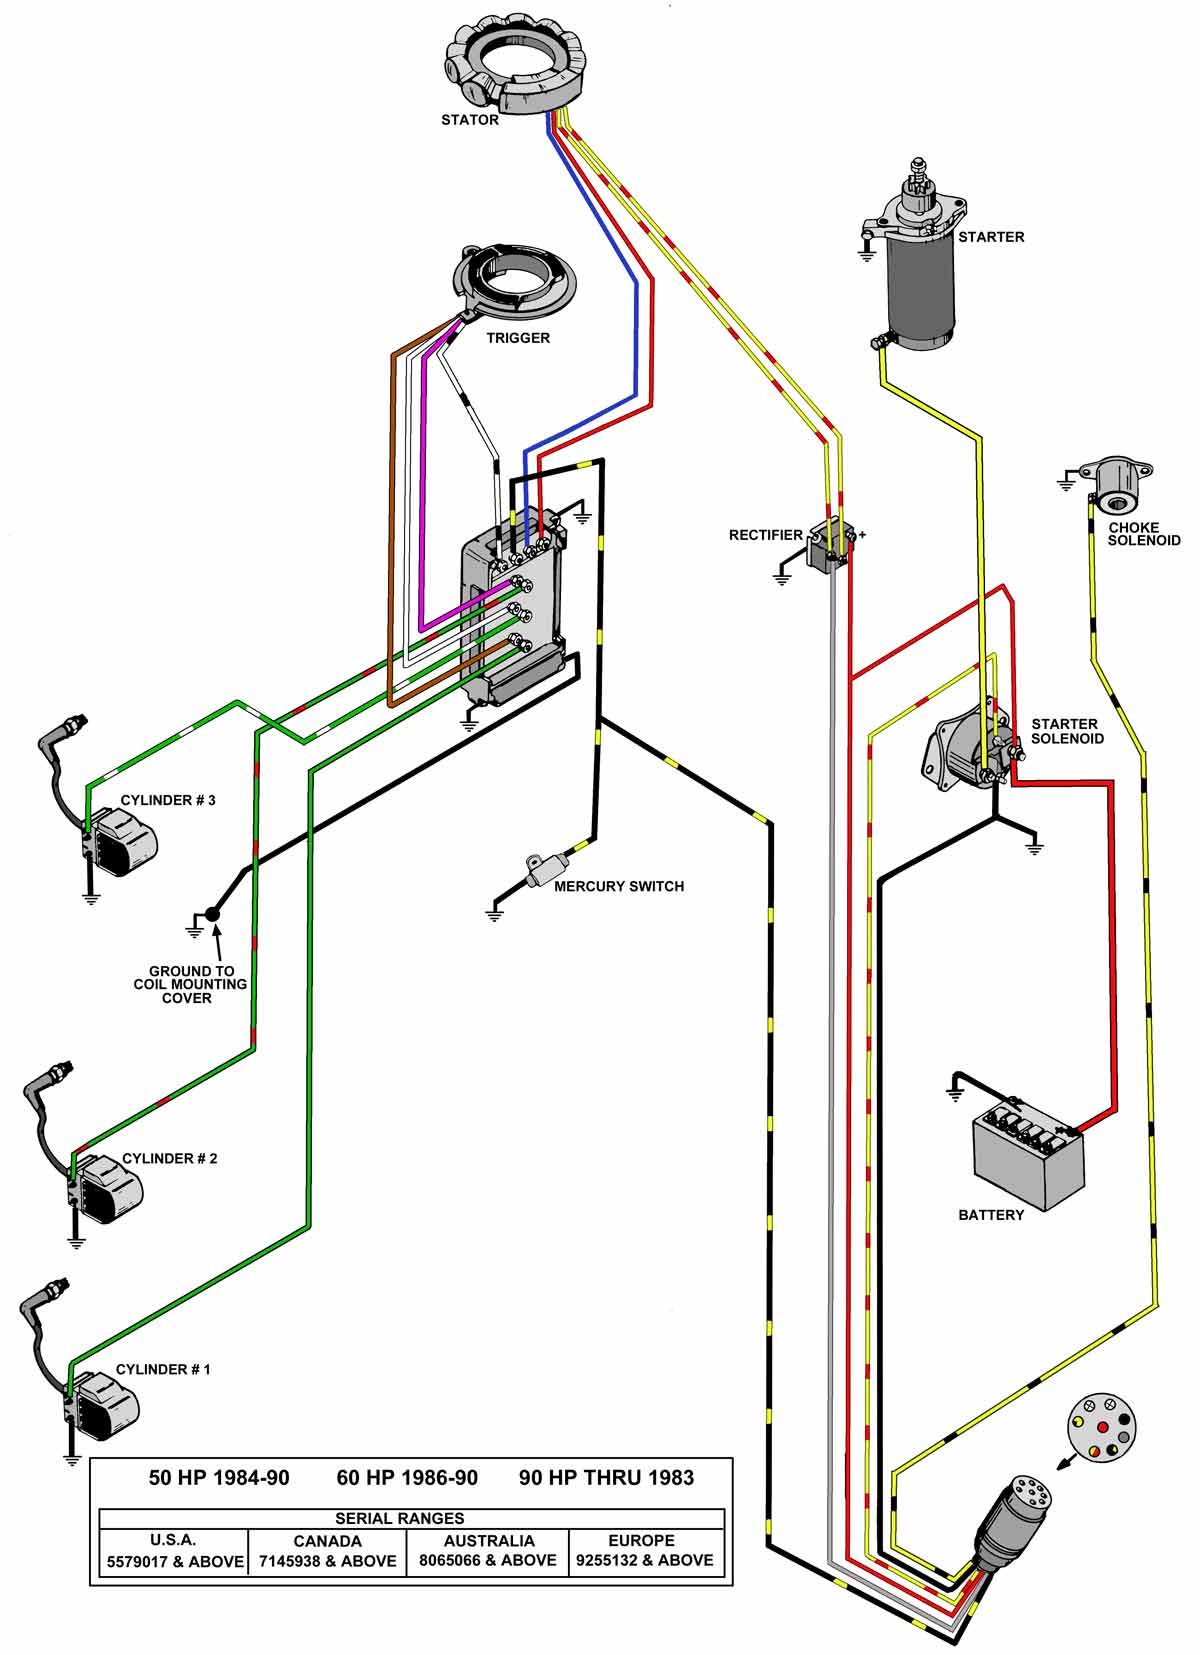 40 hp johnson outboard wiring diagram hecho diy wiring diagrams u2022 rh socialadder co 1978 Mercury Outboard Wiring Diagram 40 HP 1979 40 HP Mercury